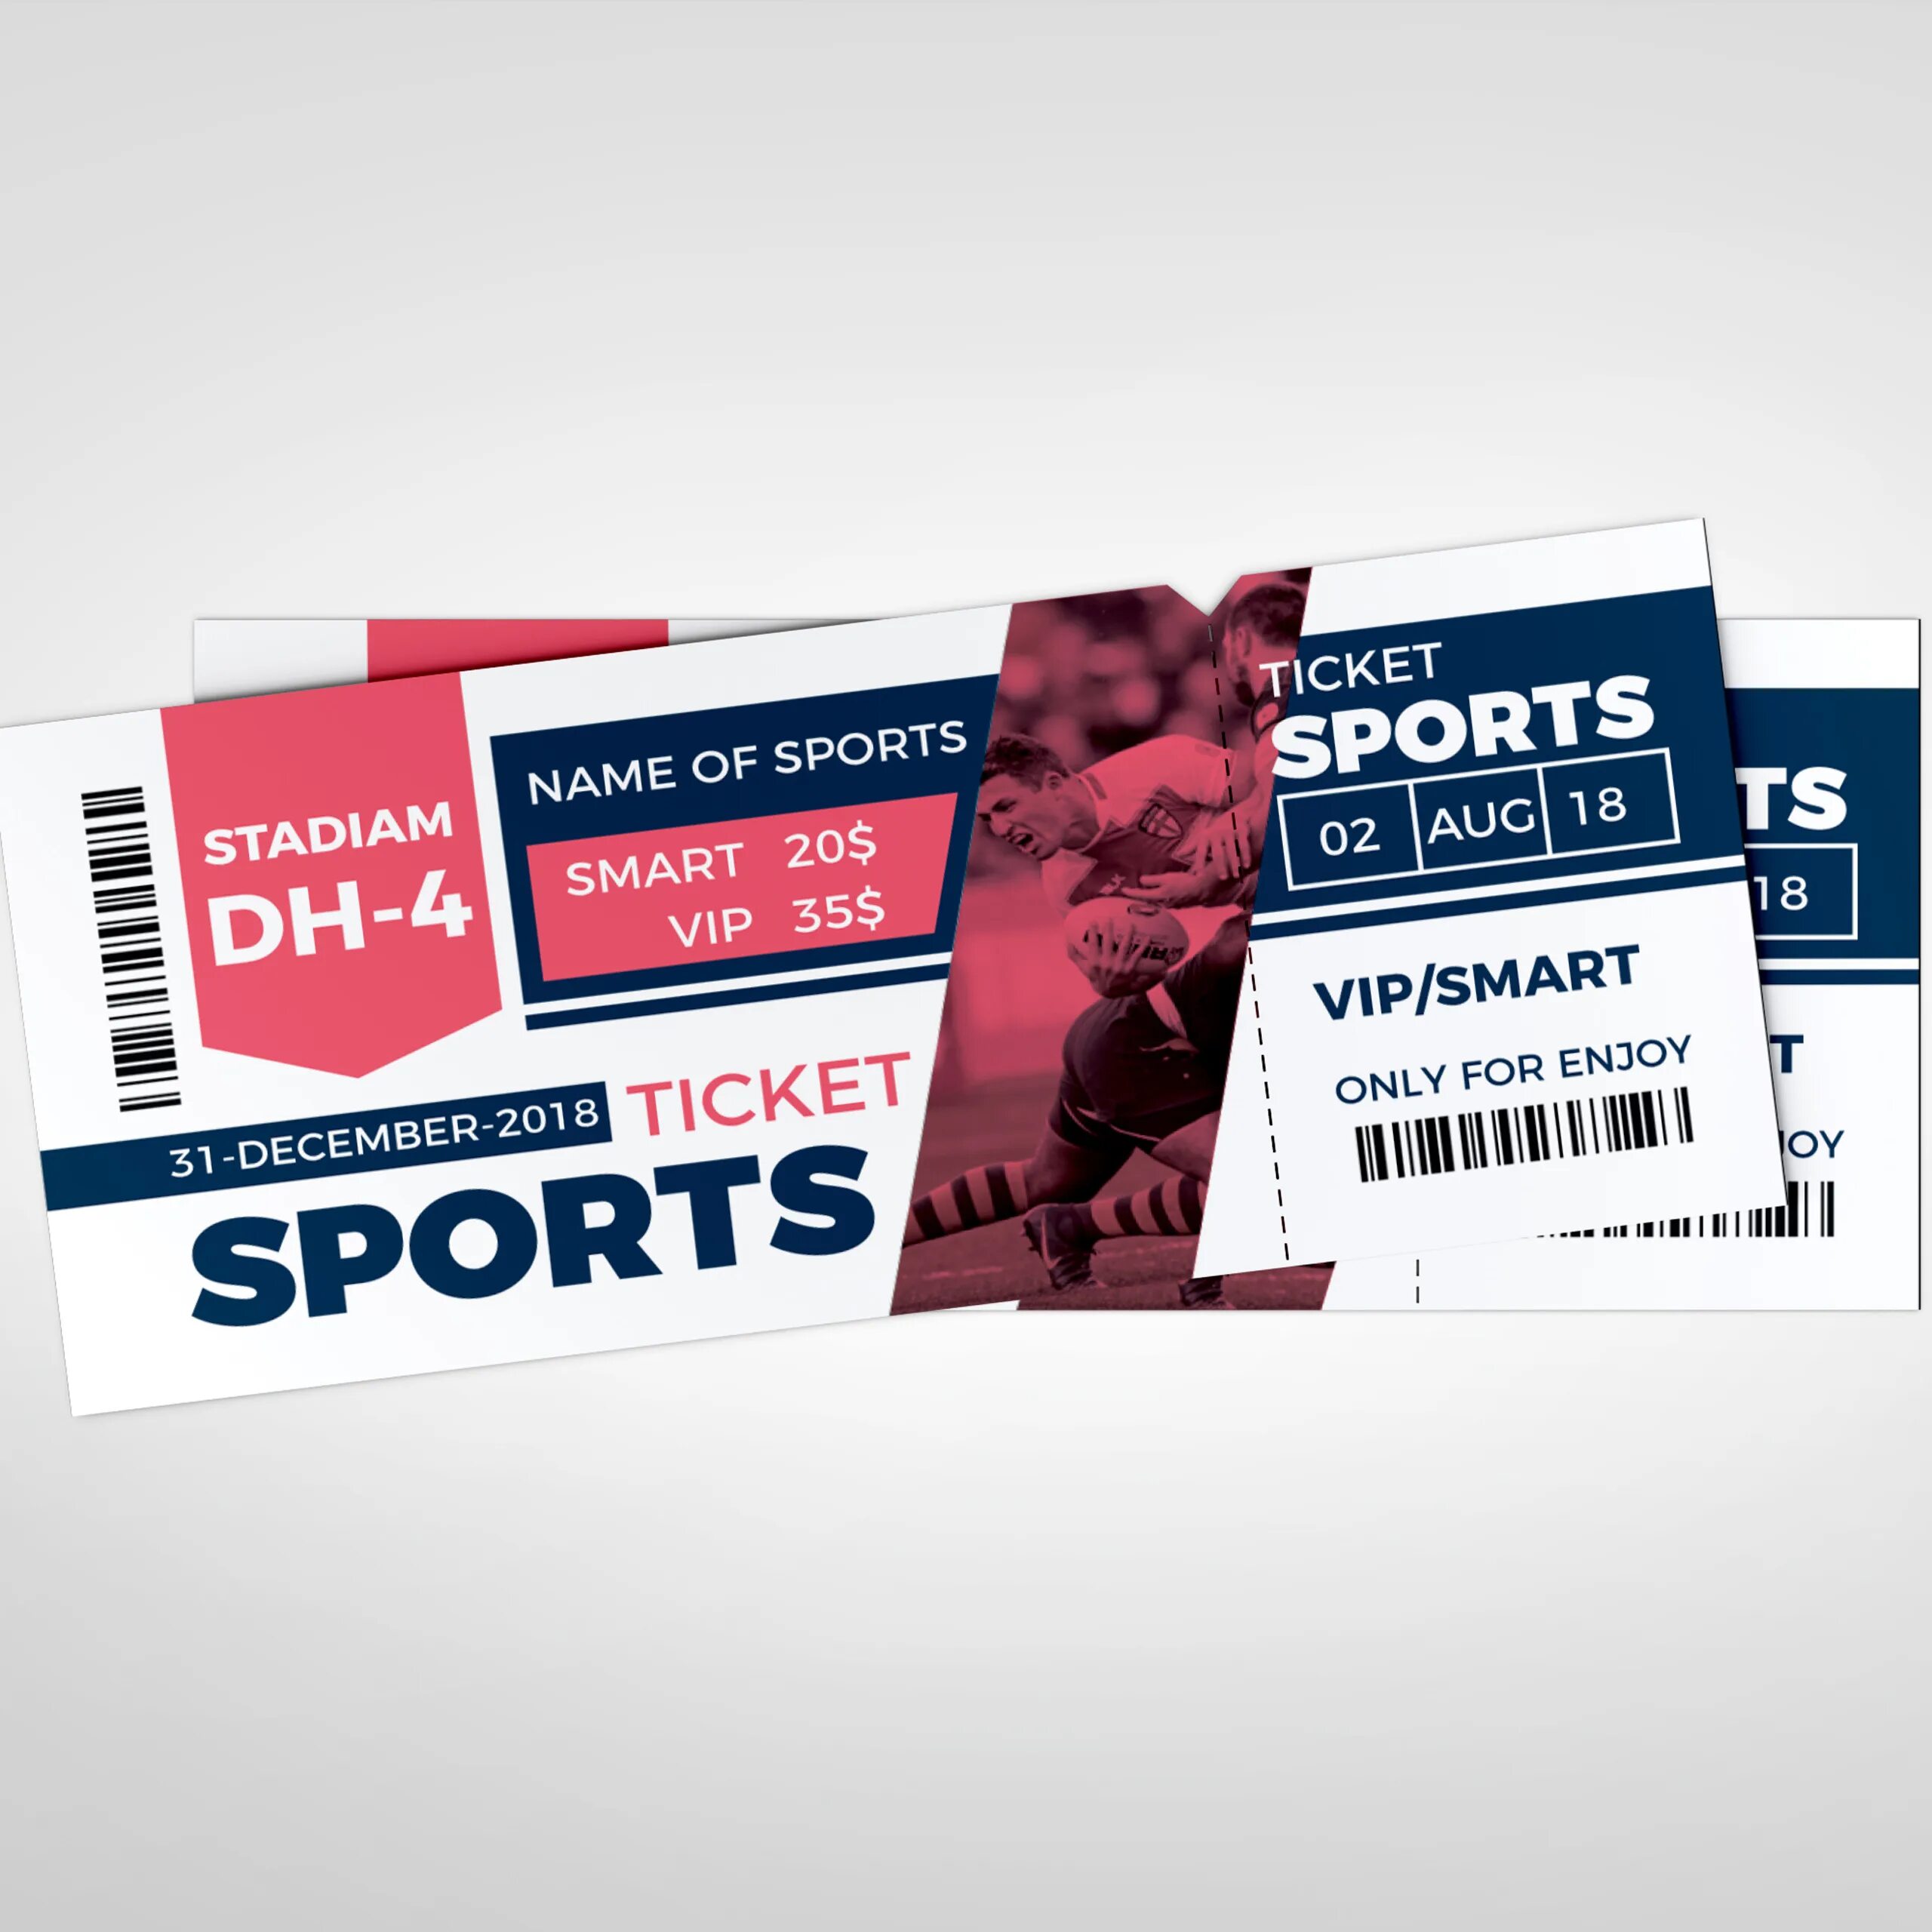 Performance ticket. Sport ticket Design. Ticket событие. Sports tickets. Fast ticket дизайн.